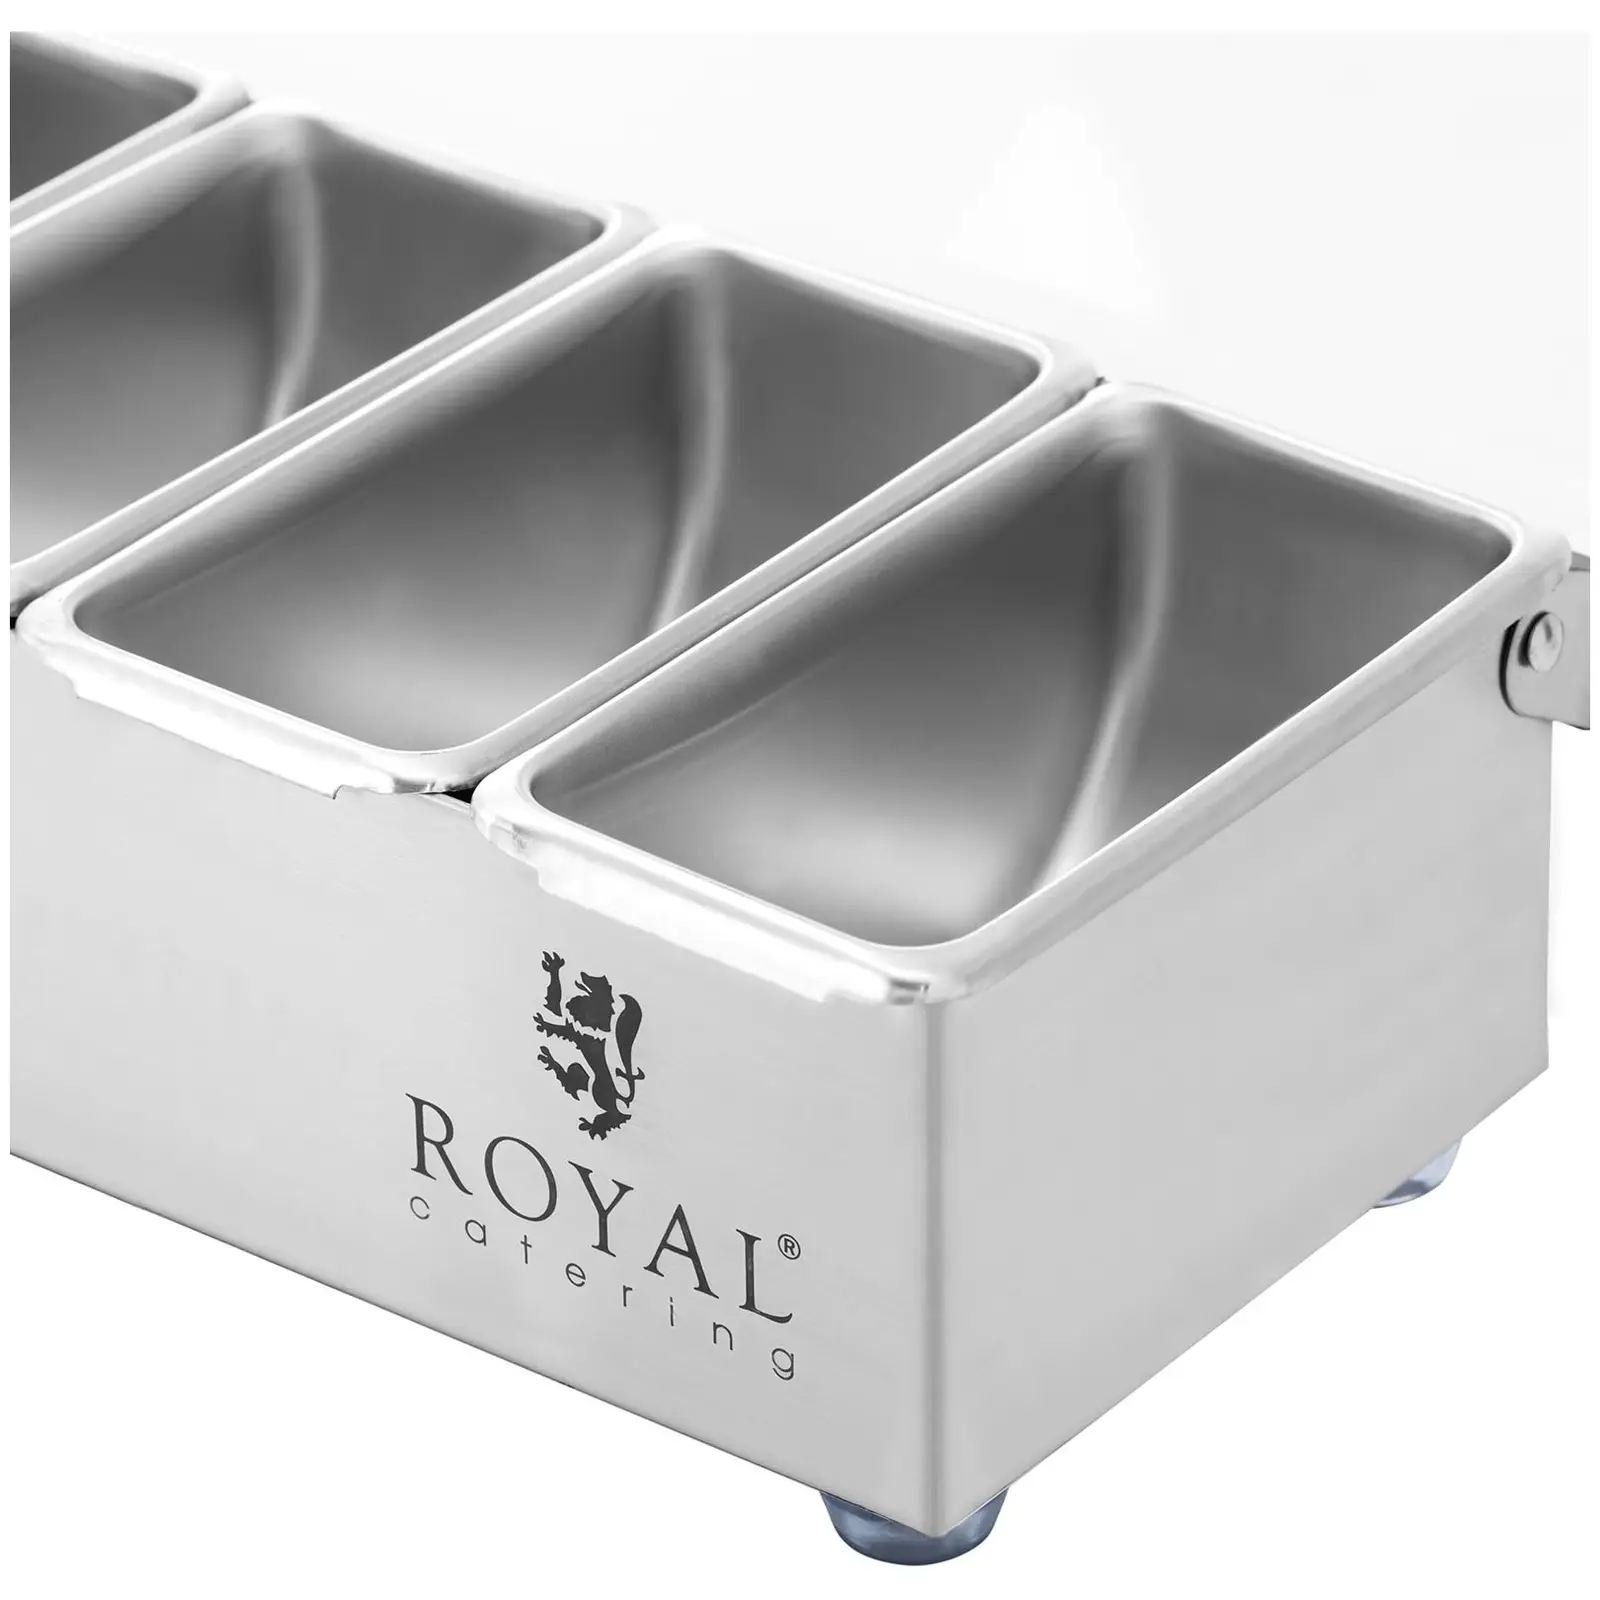 Contenitore portacondimenti - Acciaio inox - 4 x 0,4 L - Royal Catering